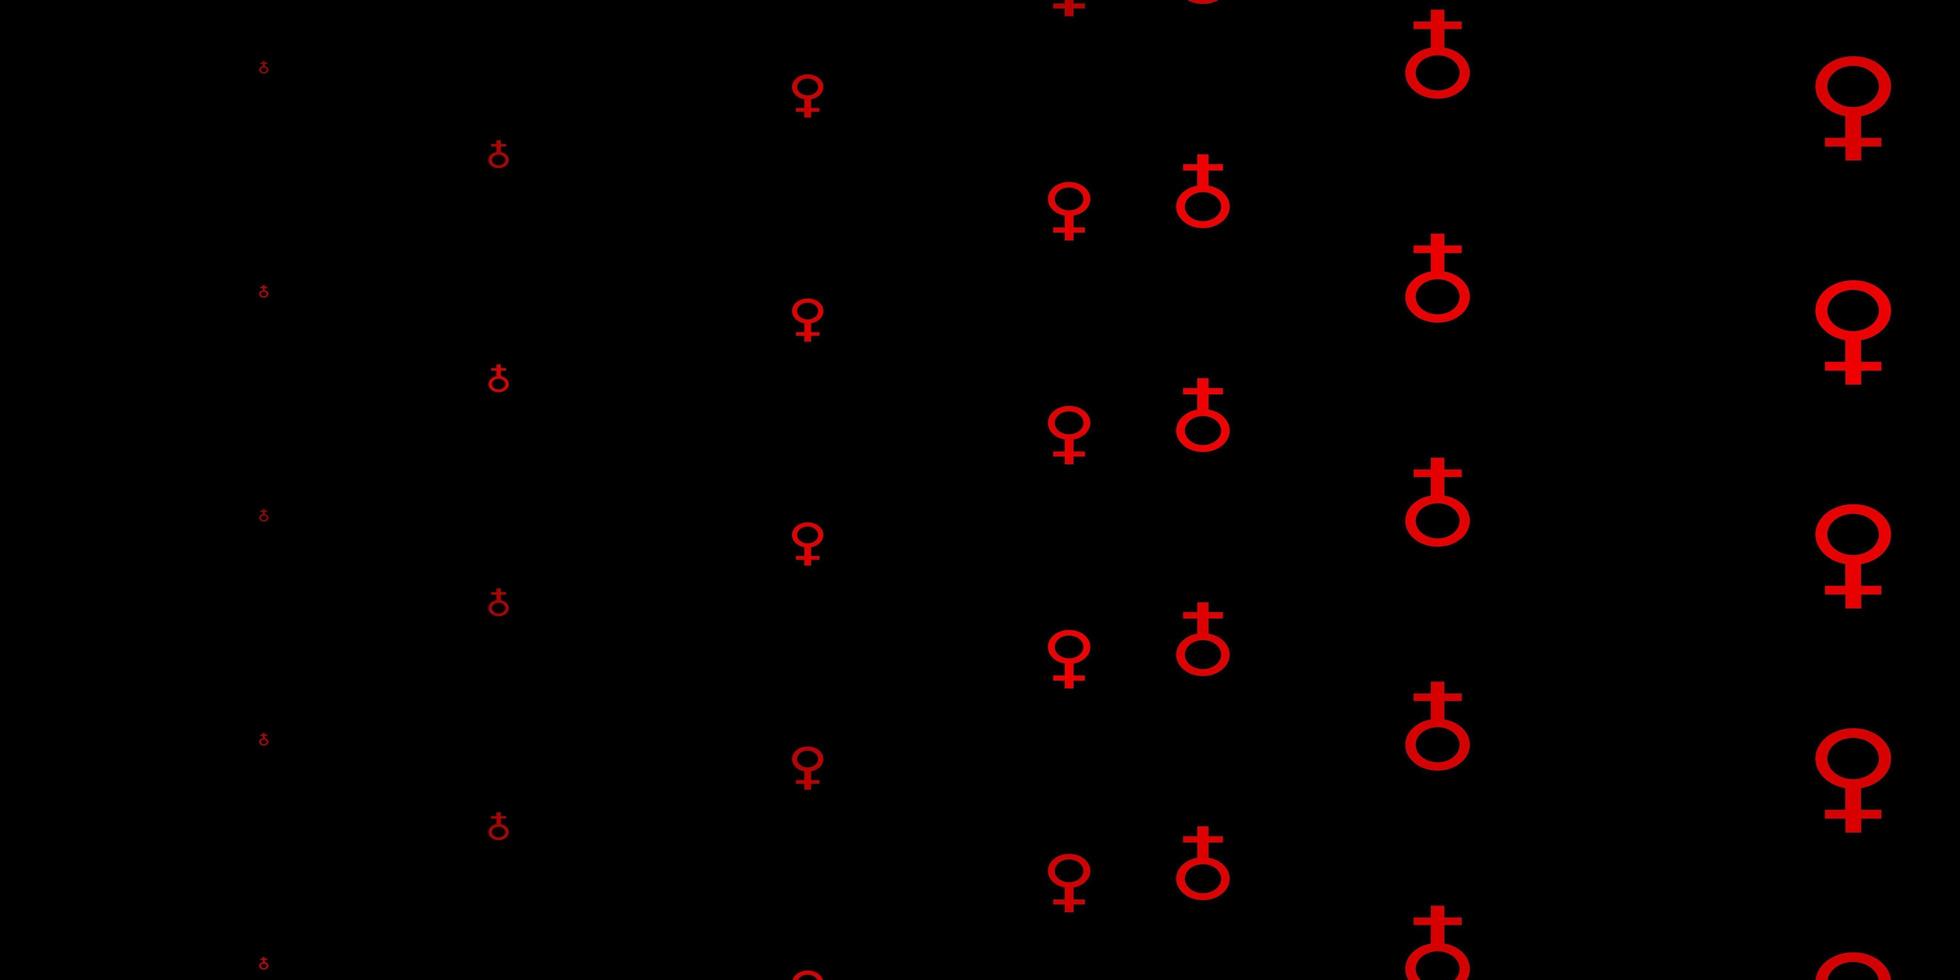 donkergroene rode vectorachtergrond met symbolen van de vrouwenmacht vector